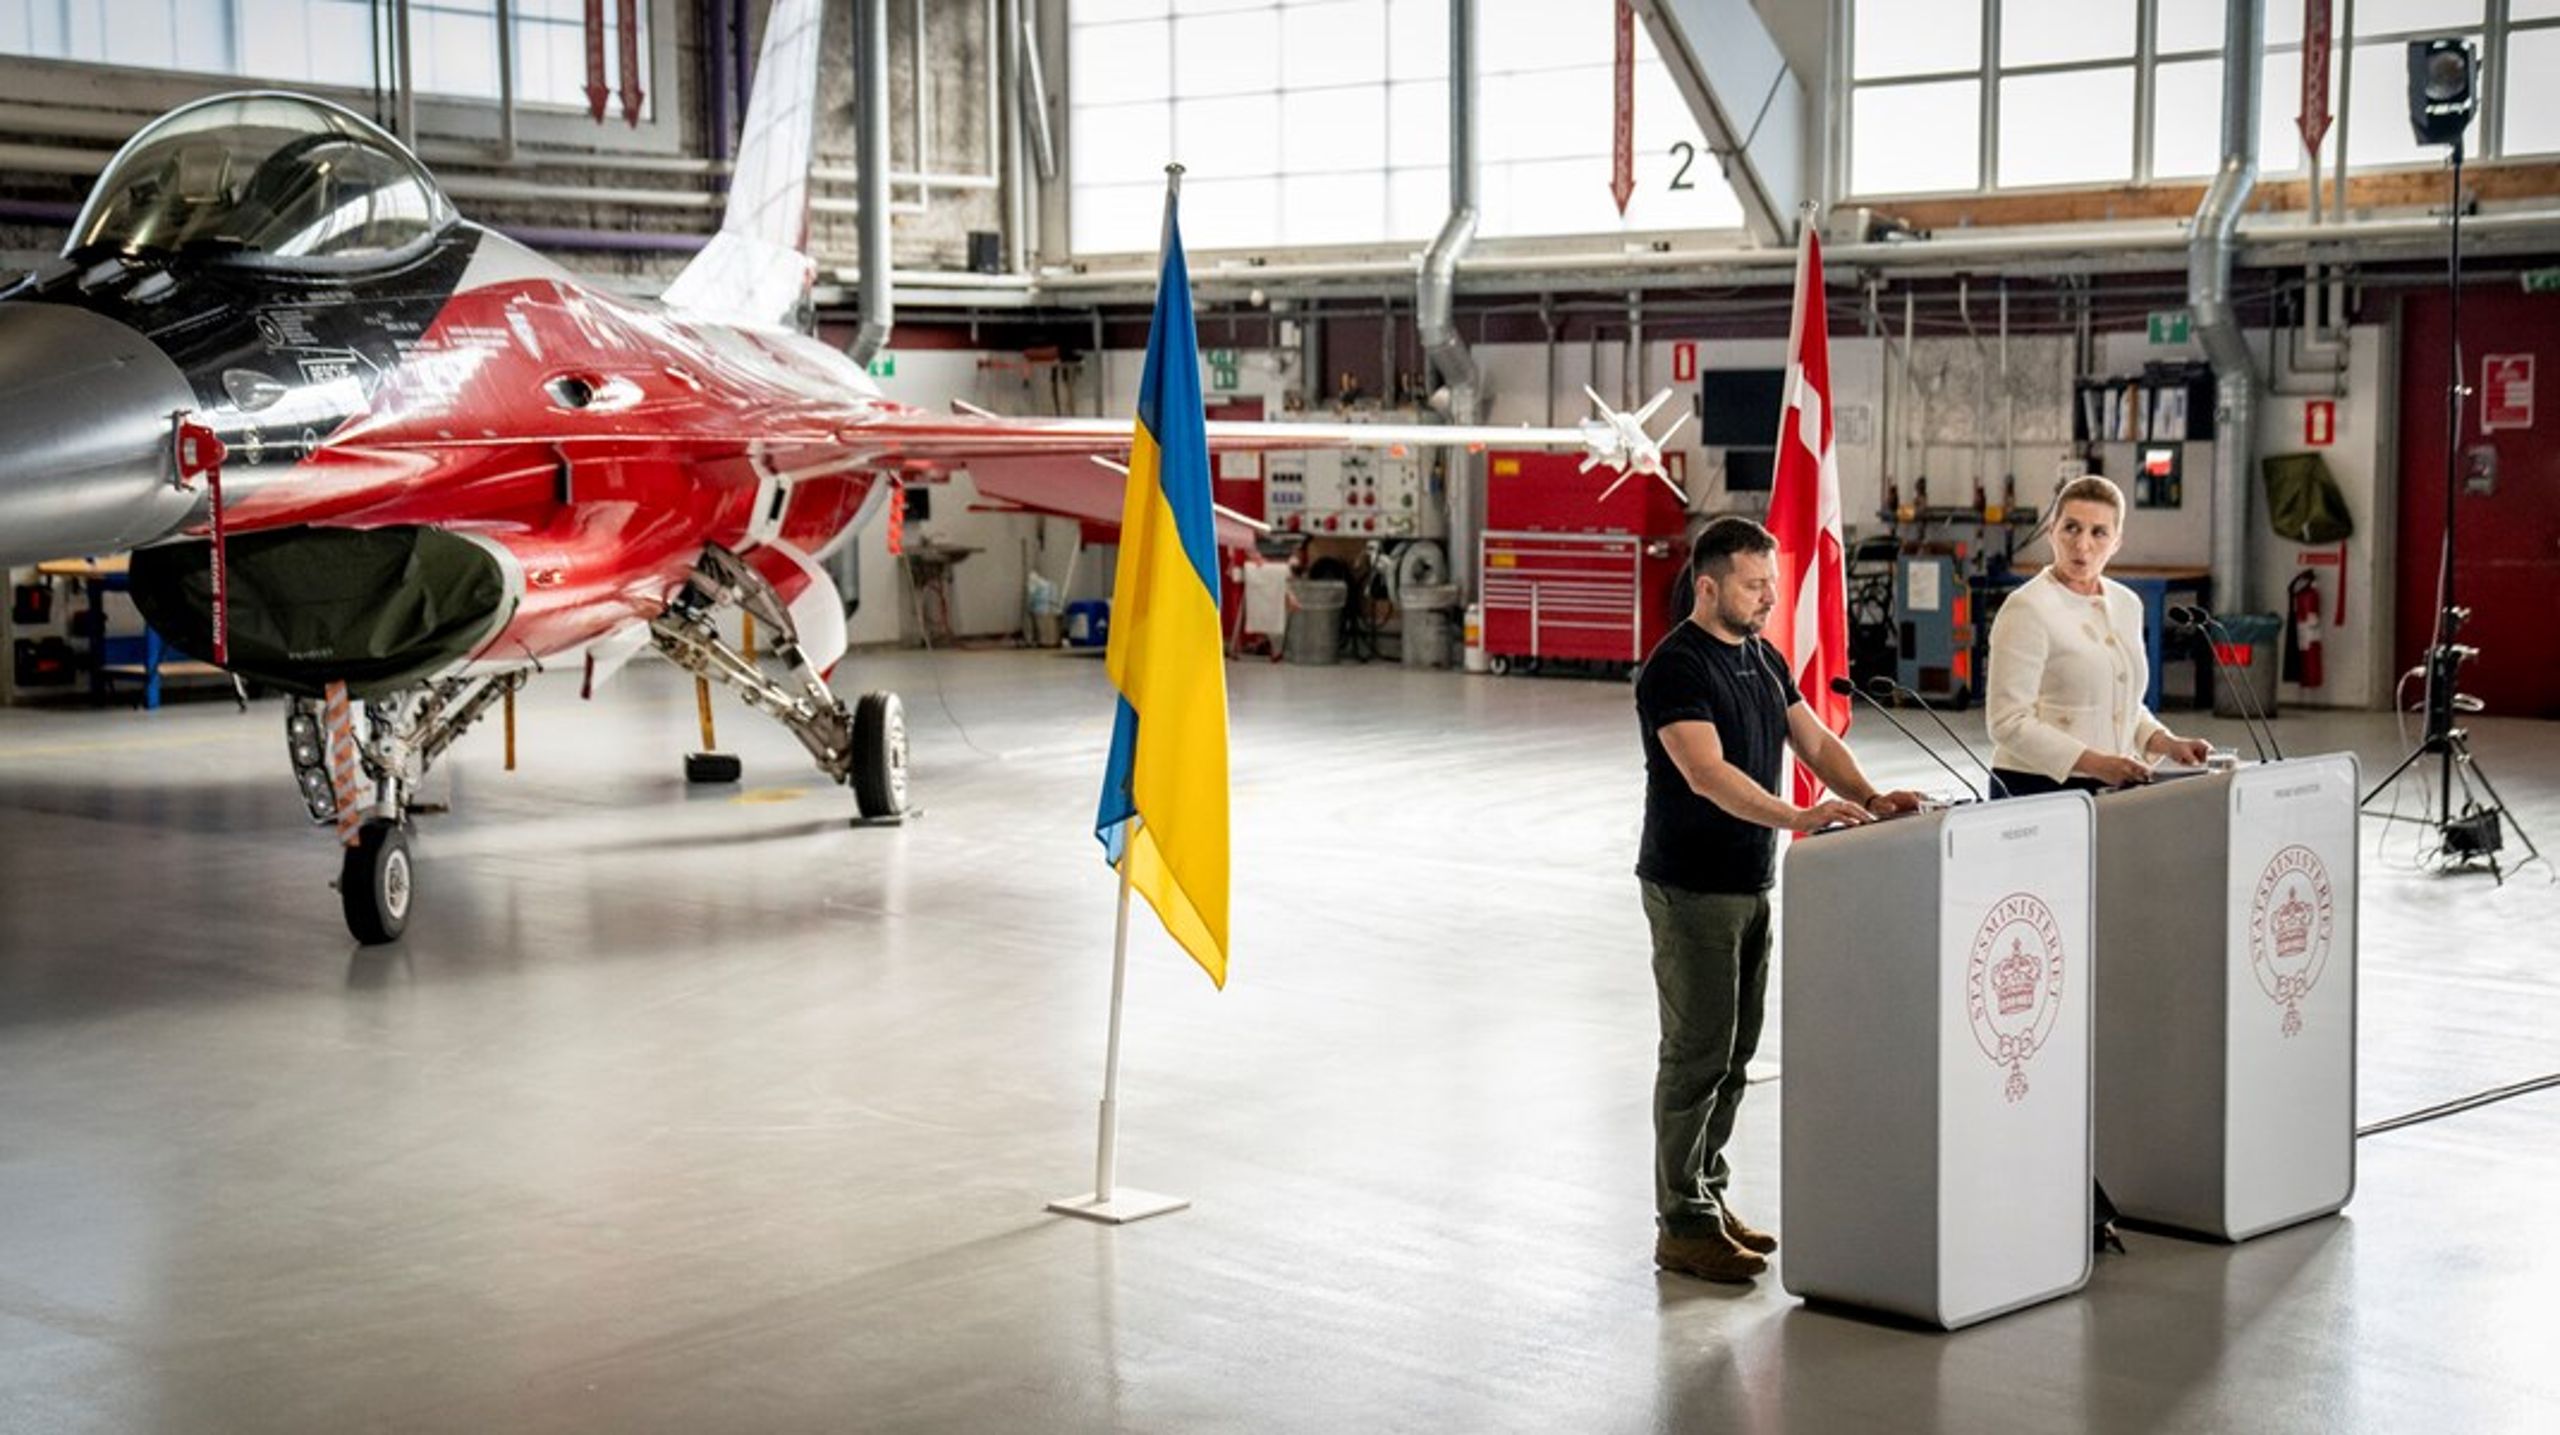 Da statsminister Mette Frederiksen (S) forrige søndag sammen med præsident Zelenskyj annoncerede donation af 19 danske F16-fly til Ukraine, varslede det en ny fase i ukrainernes forsvar mod Rusland.